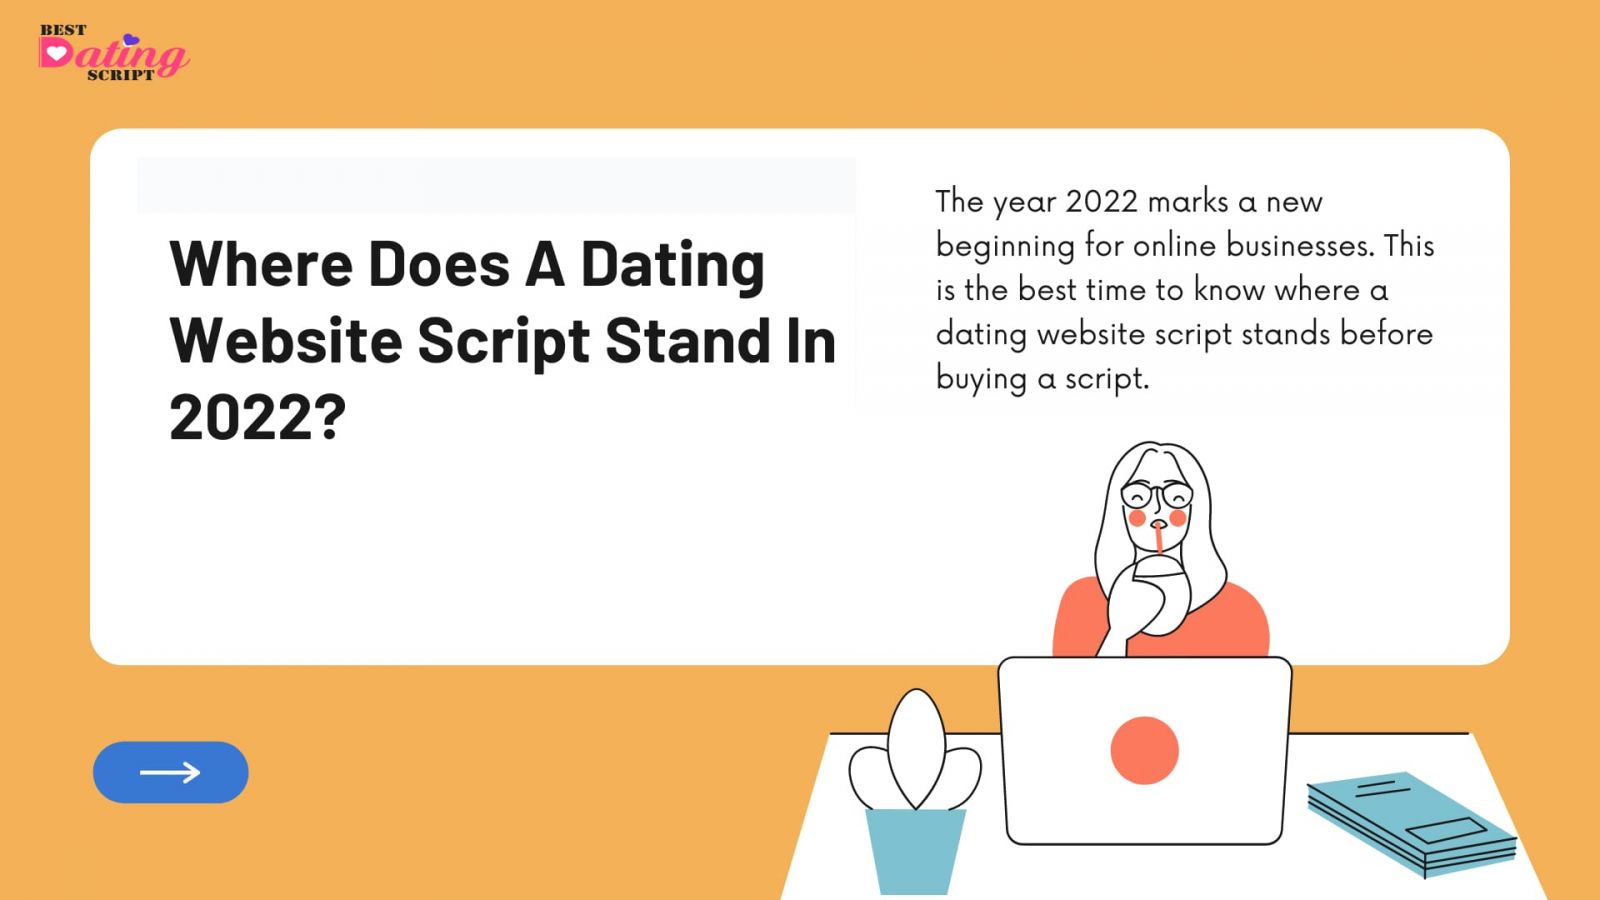 Dating Website Script